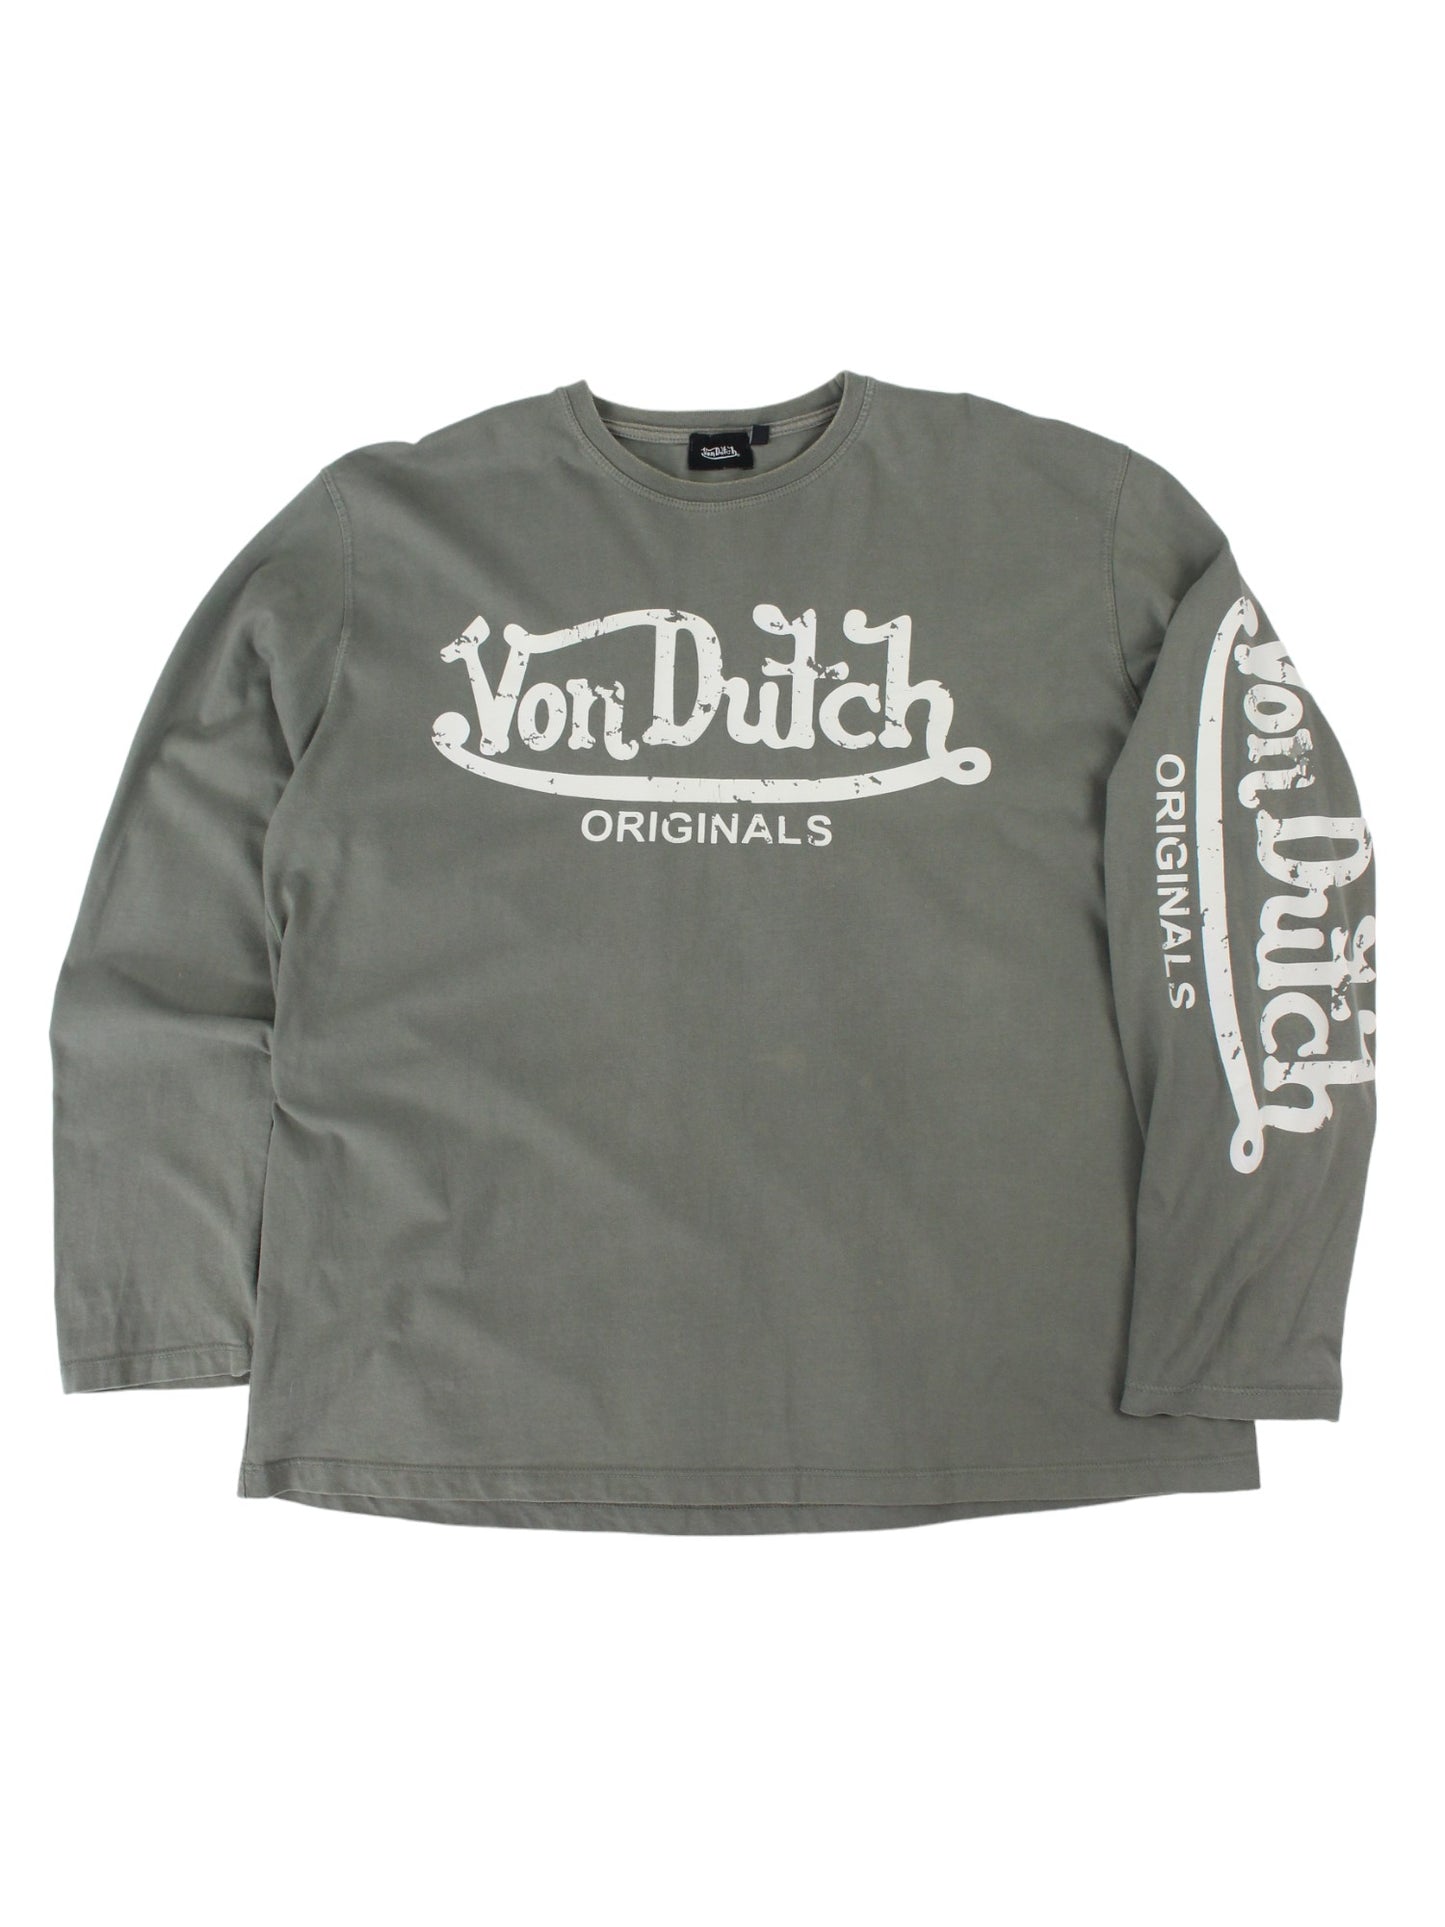 Von Dutch Green T-Shirt (M)